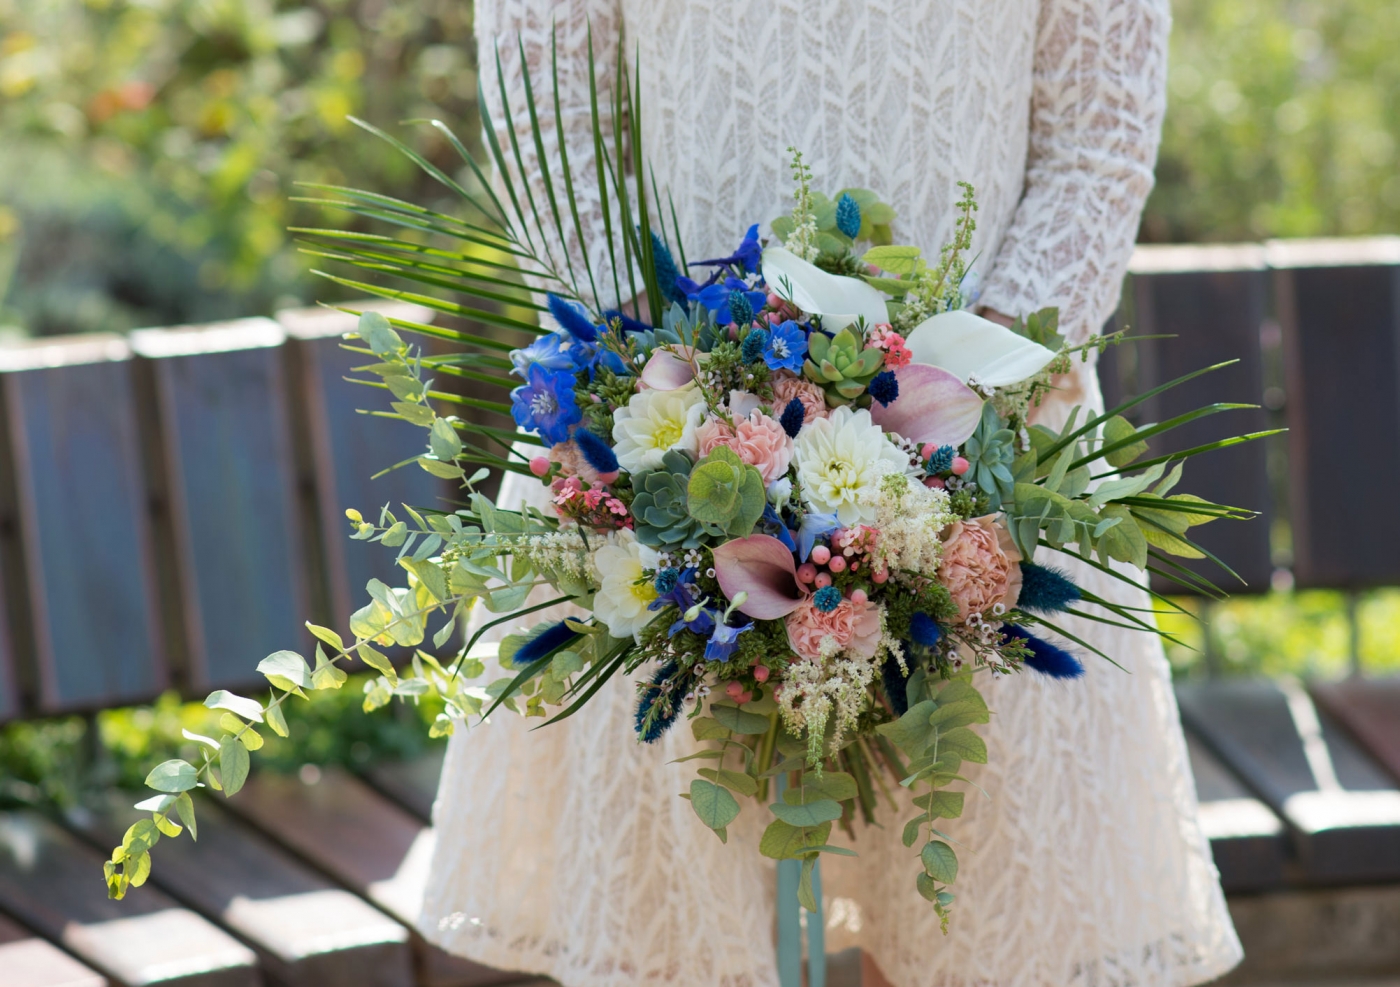 Ein schöner Blumenstrauß wird von der Braut in einem eleganten Hochzeitskleid bei ihrer Sommerttrauung gehalten.